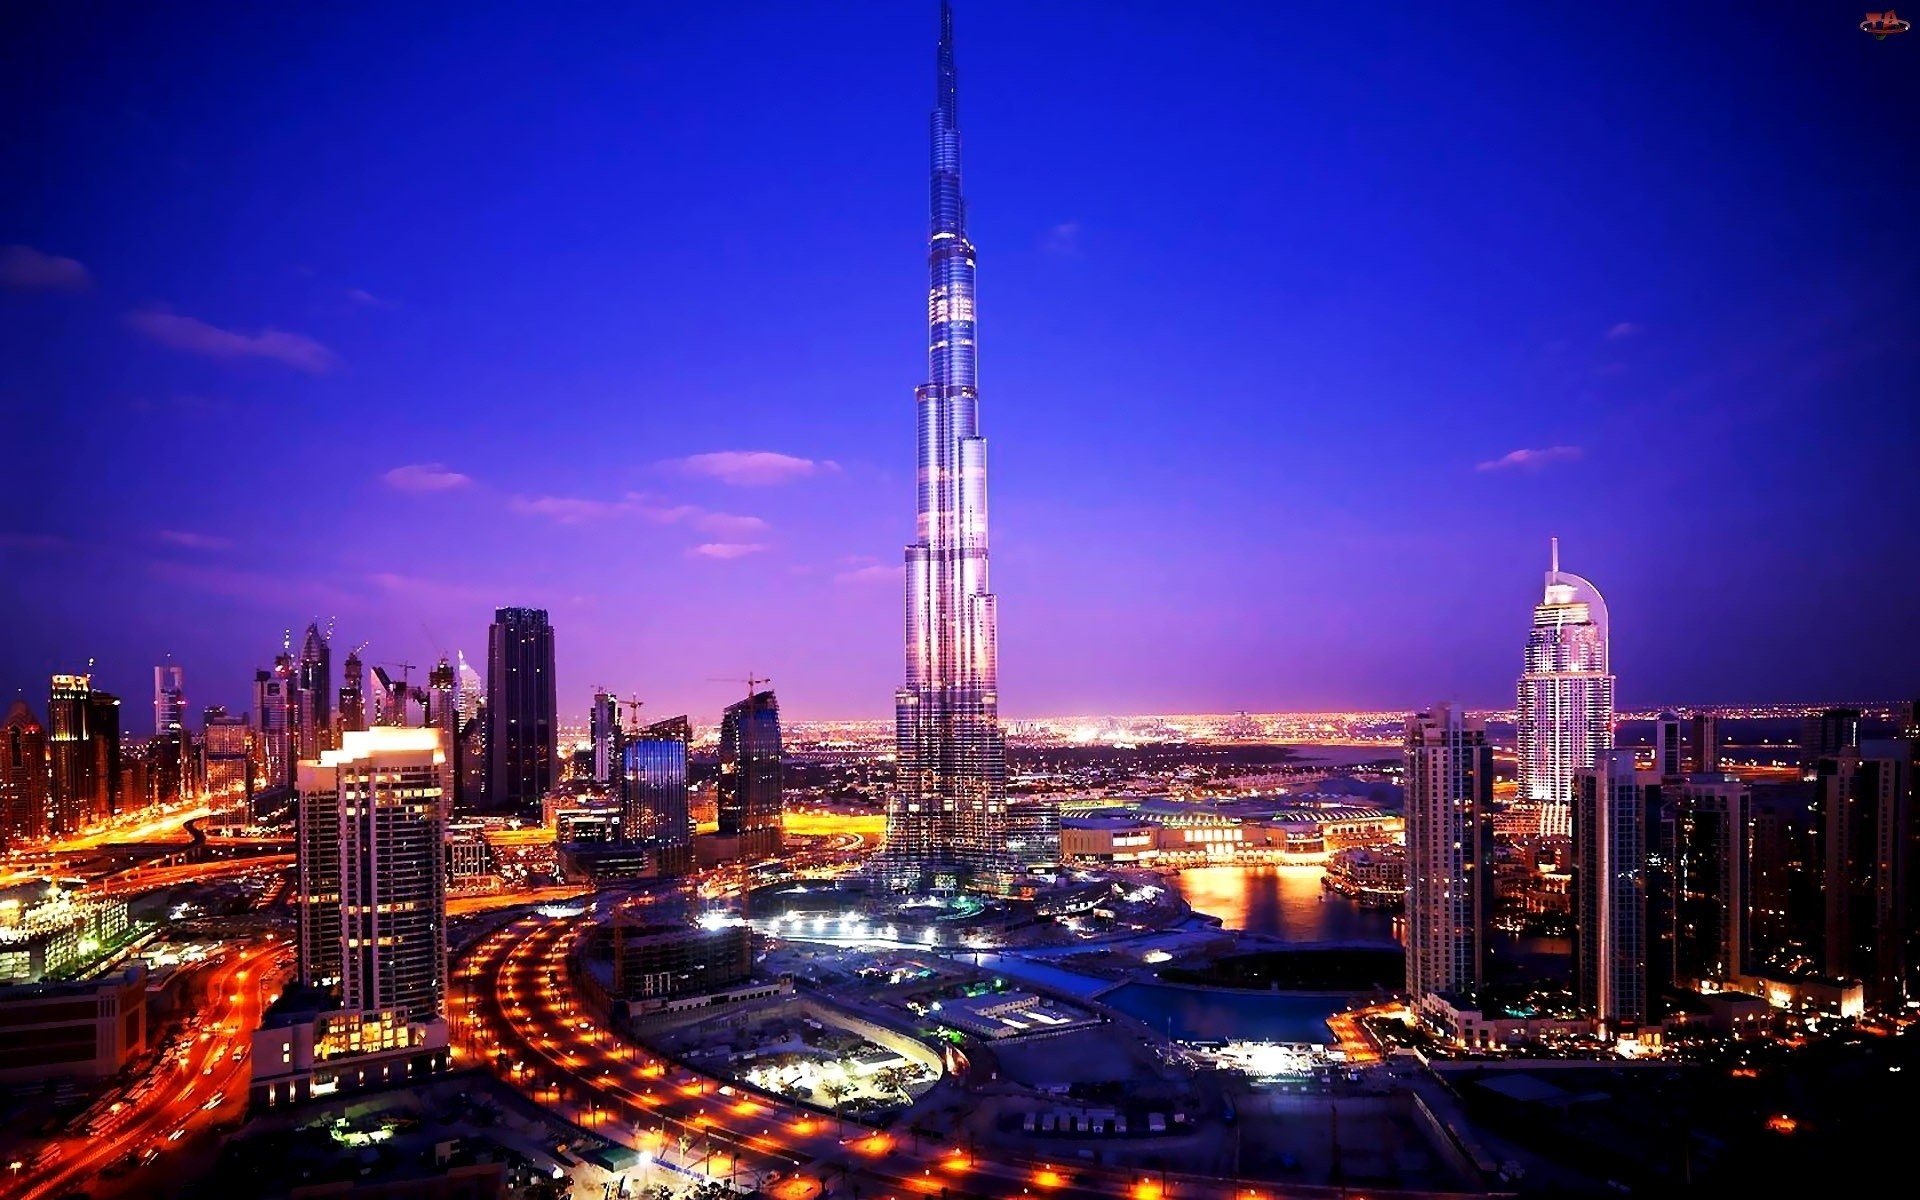 Фото город, городской пейзаж, ночь, горизонт, небоскреб, вечер, башня, объединённые арабские эмираты, Дубай, сумрак, метрополис, Бурдж-Халифа, центр города, ориентир, городская область - бесплатные картинки на Fonwall